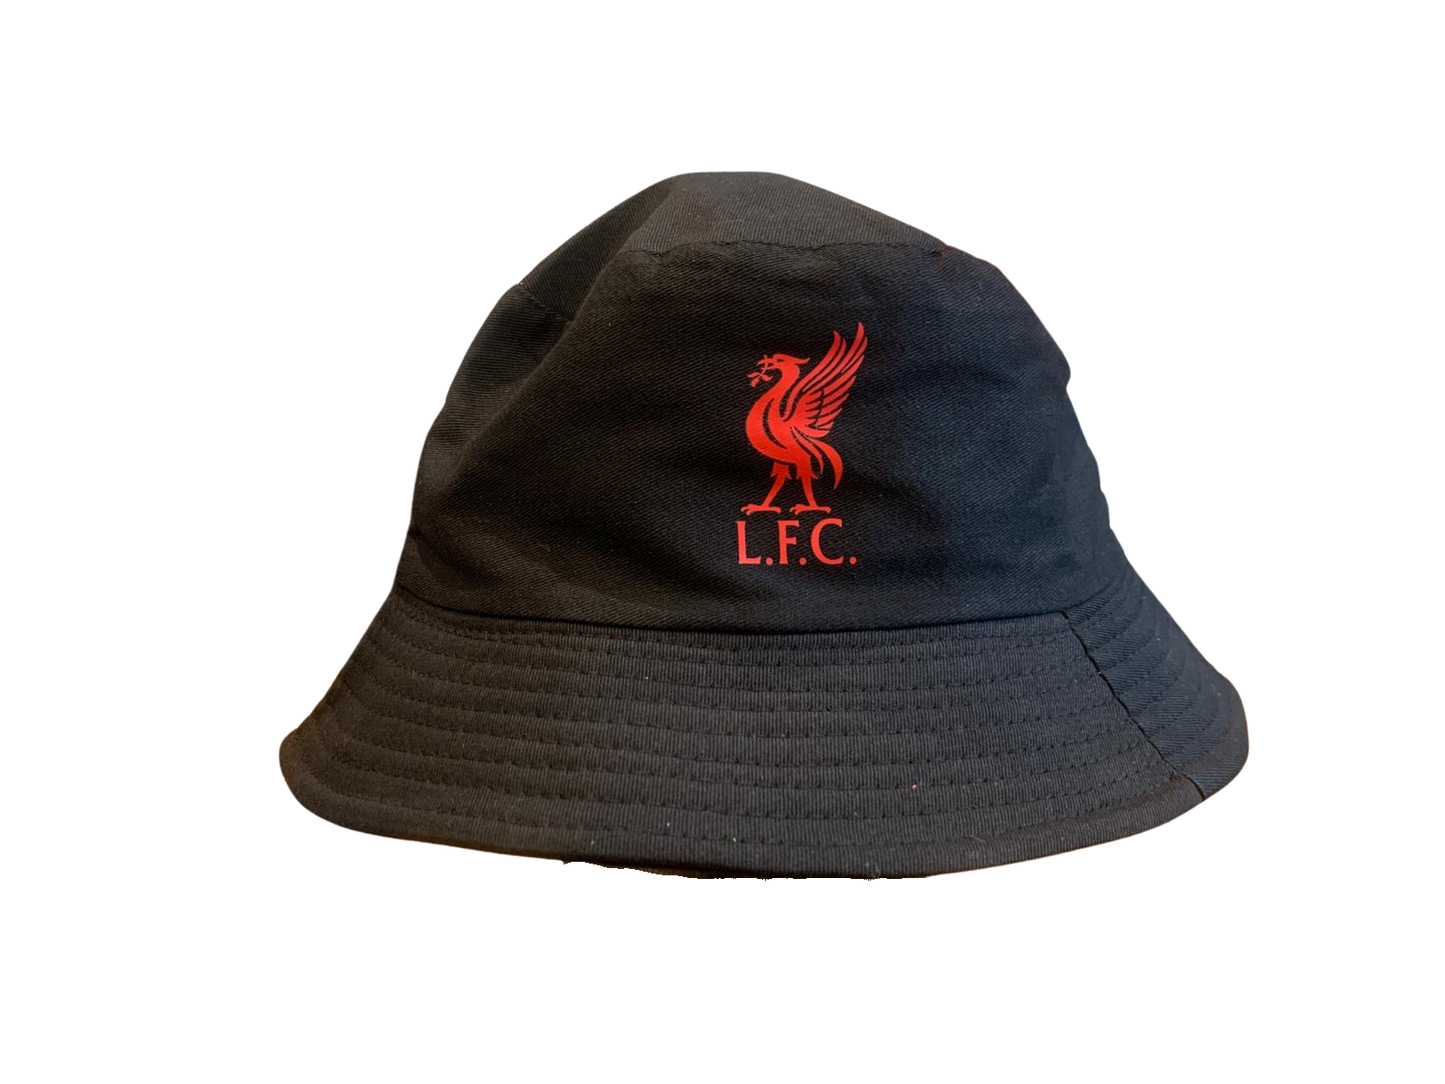 Liverpool Bucket Hat